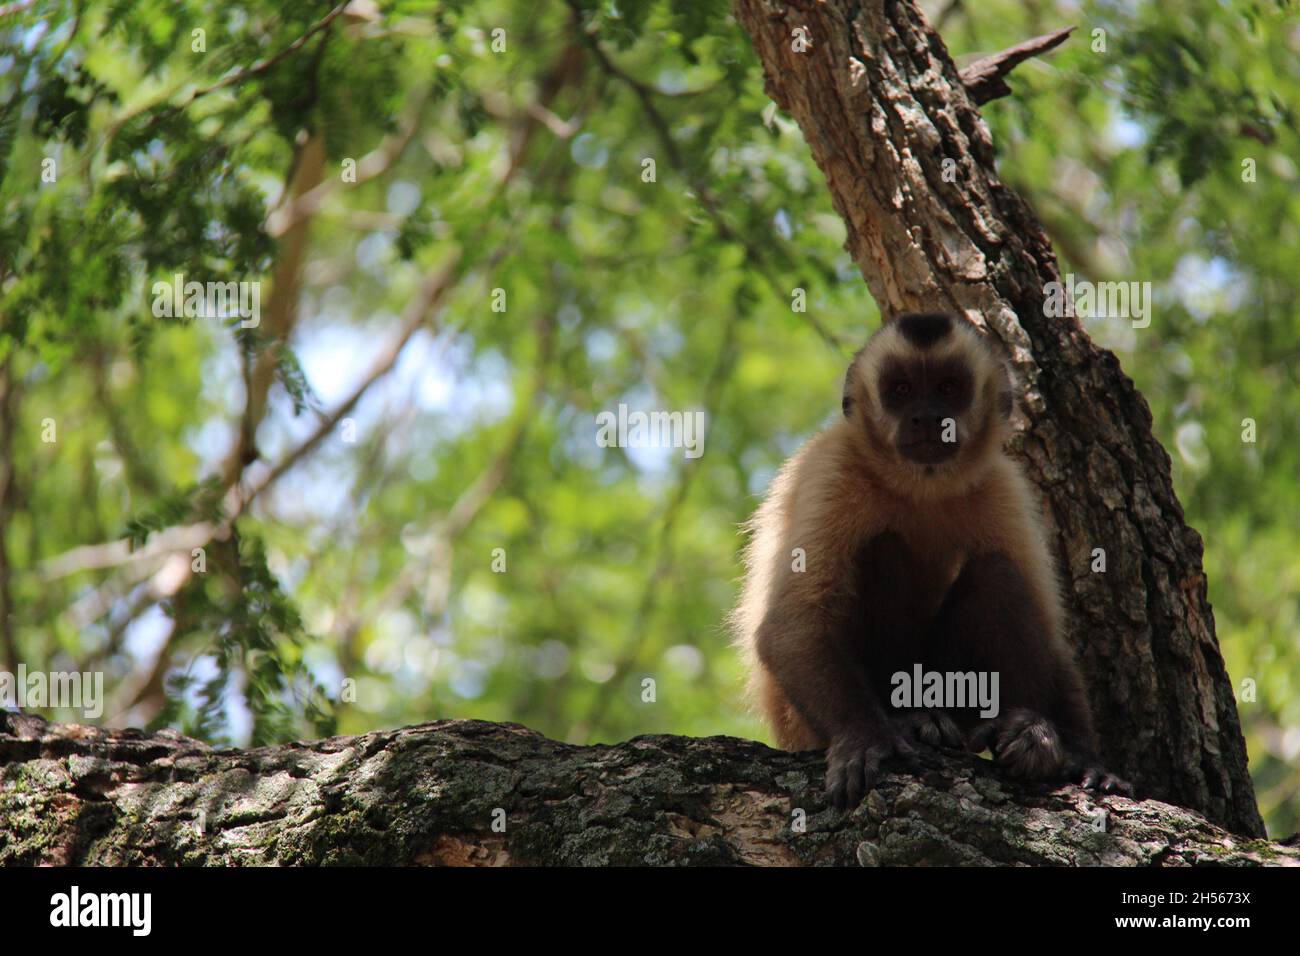 Affe sitzt auf einem Baumstamm, mit verschwommenem Hintergrund. Bonito - Mato Grosso do Sul - Brasilien. Stockfoto